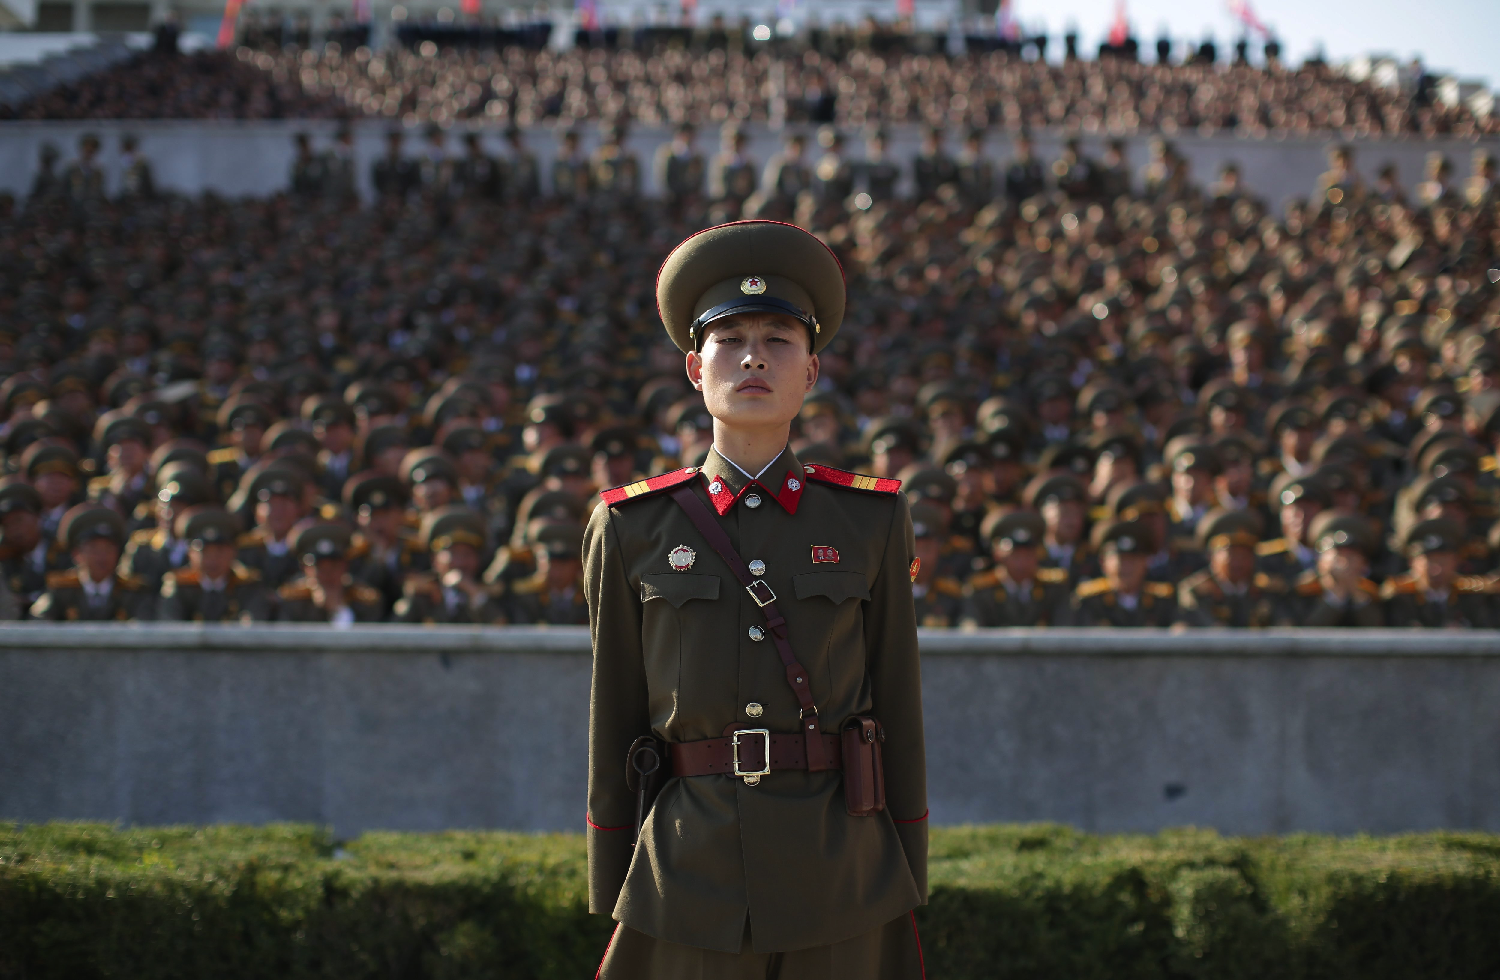 Hatalmasat parádézott az USA legyőzésére készülő Észak-Korea